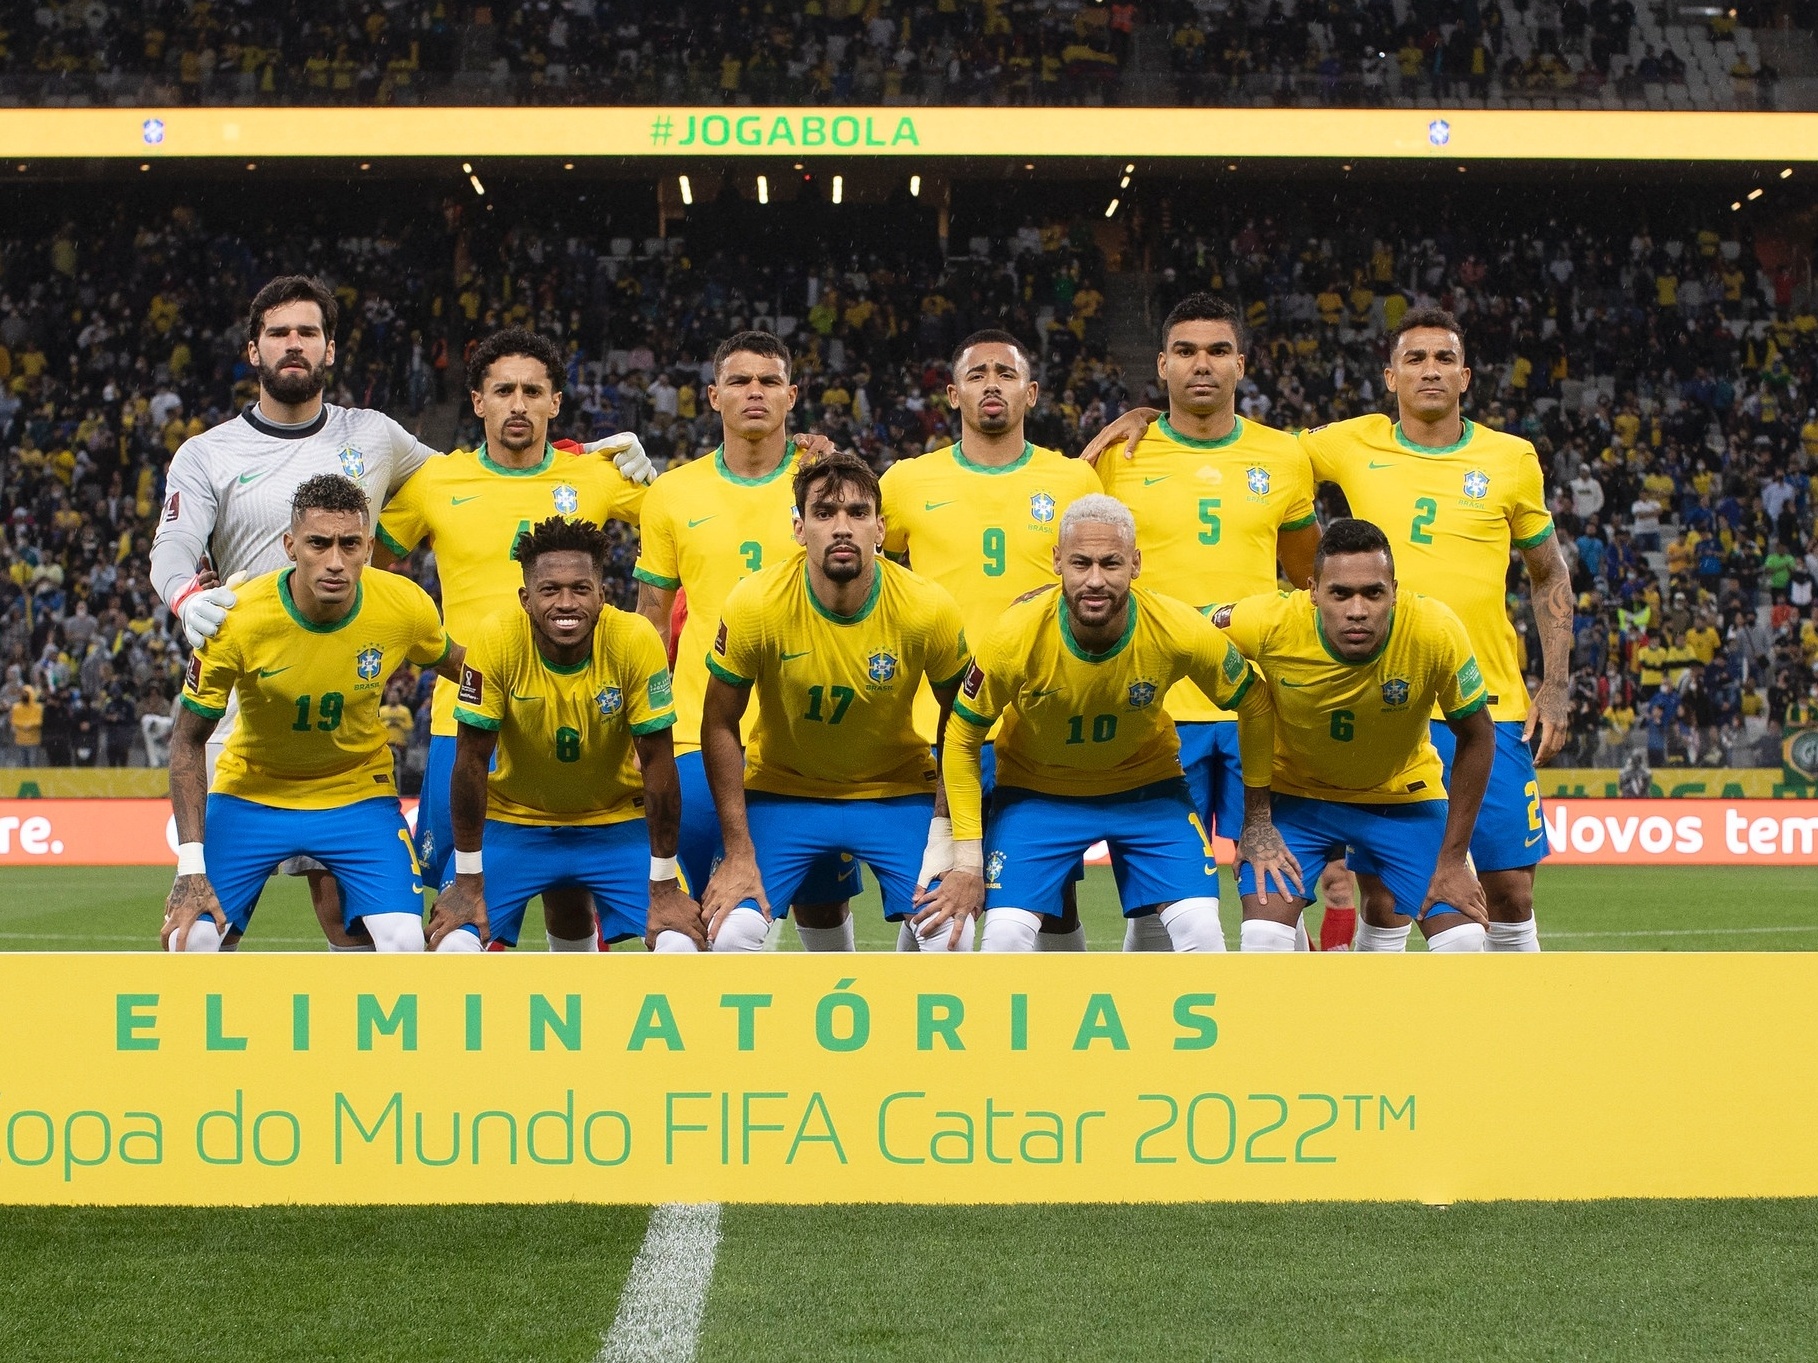 Multicampeões, rotina na CBF e ex-jogadores marcam reformulação no  organograma da Seleção, seleção brasileira